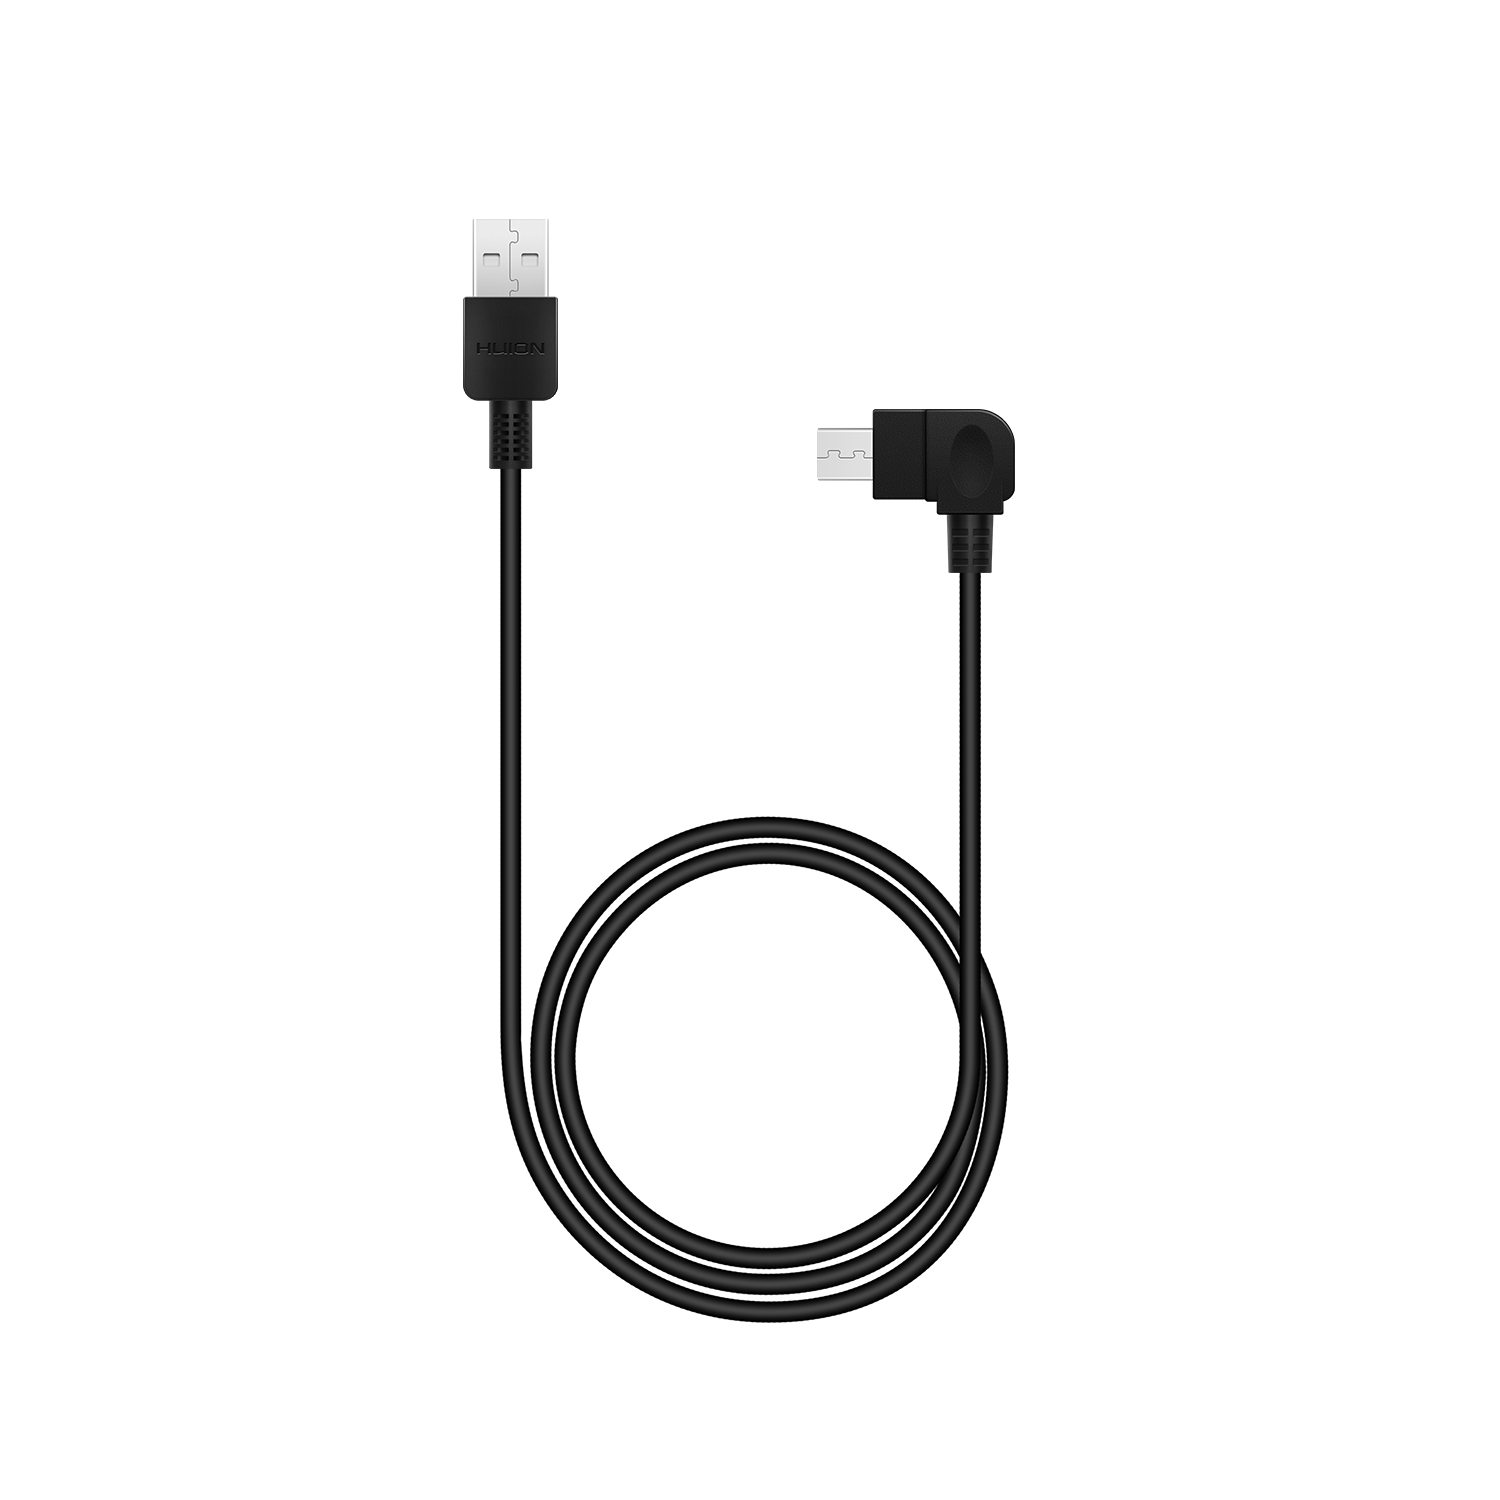 Câble USB pour Huion New 1060 plus hs64 wh1409 Câble de charge 1 A Noir 